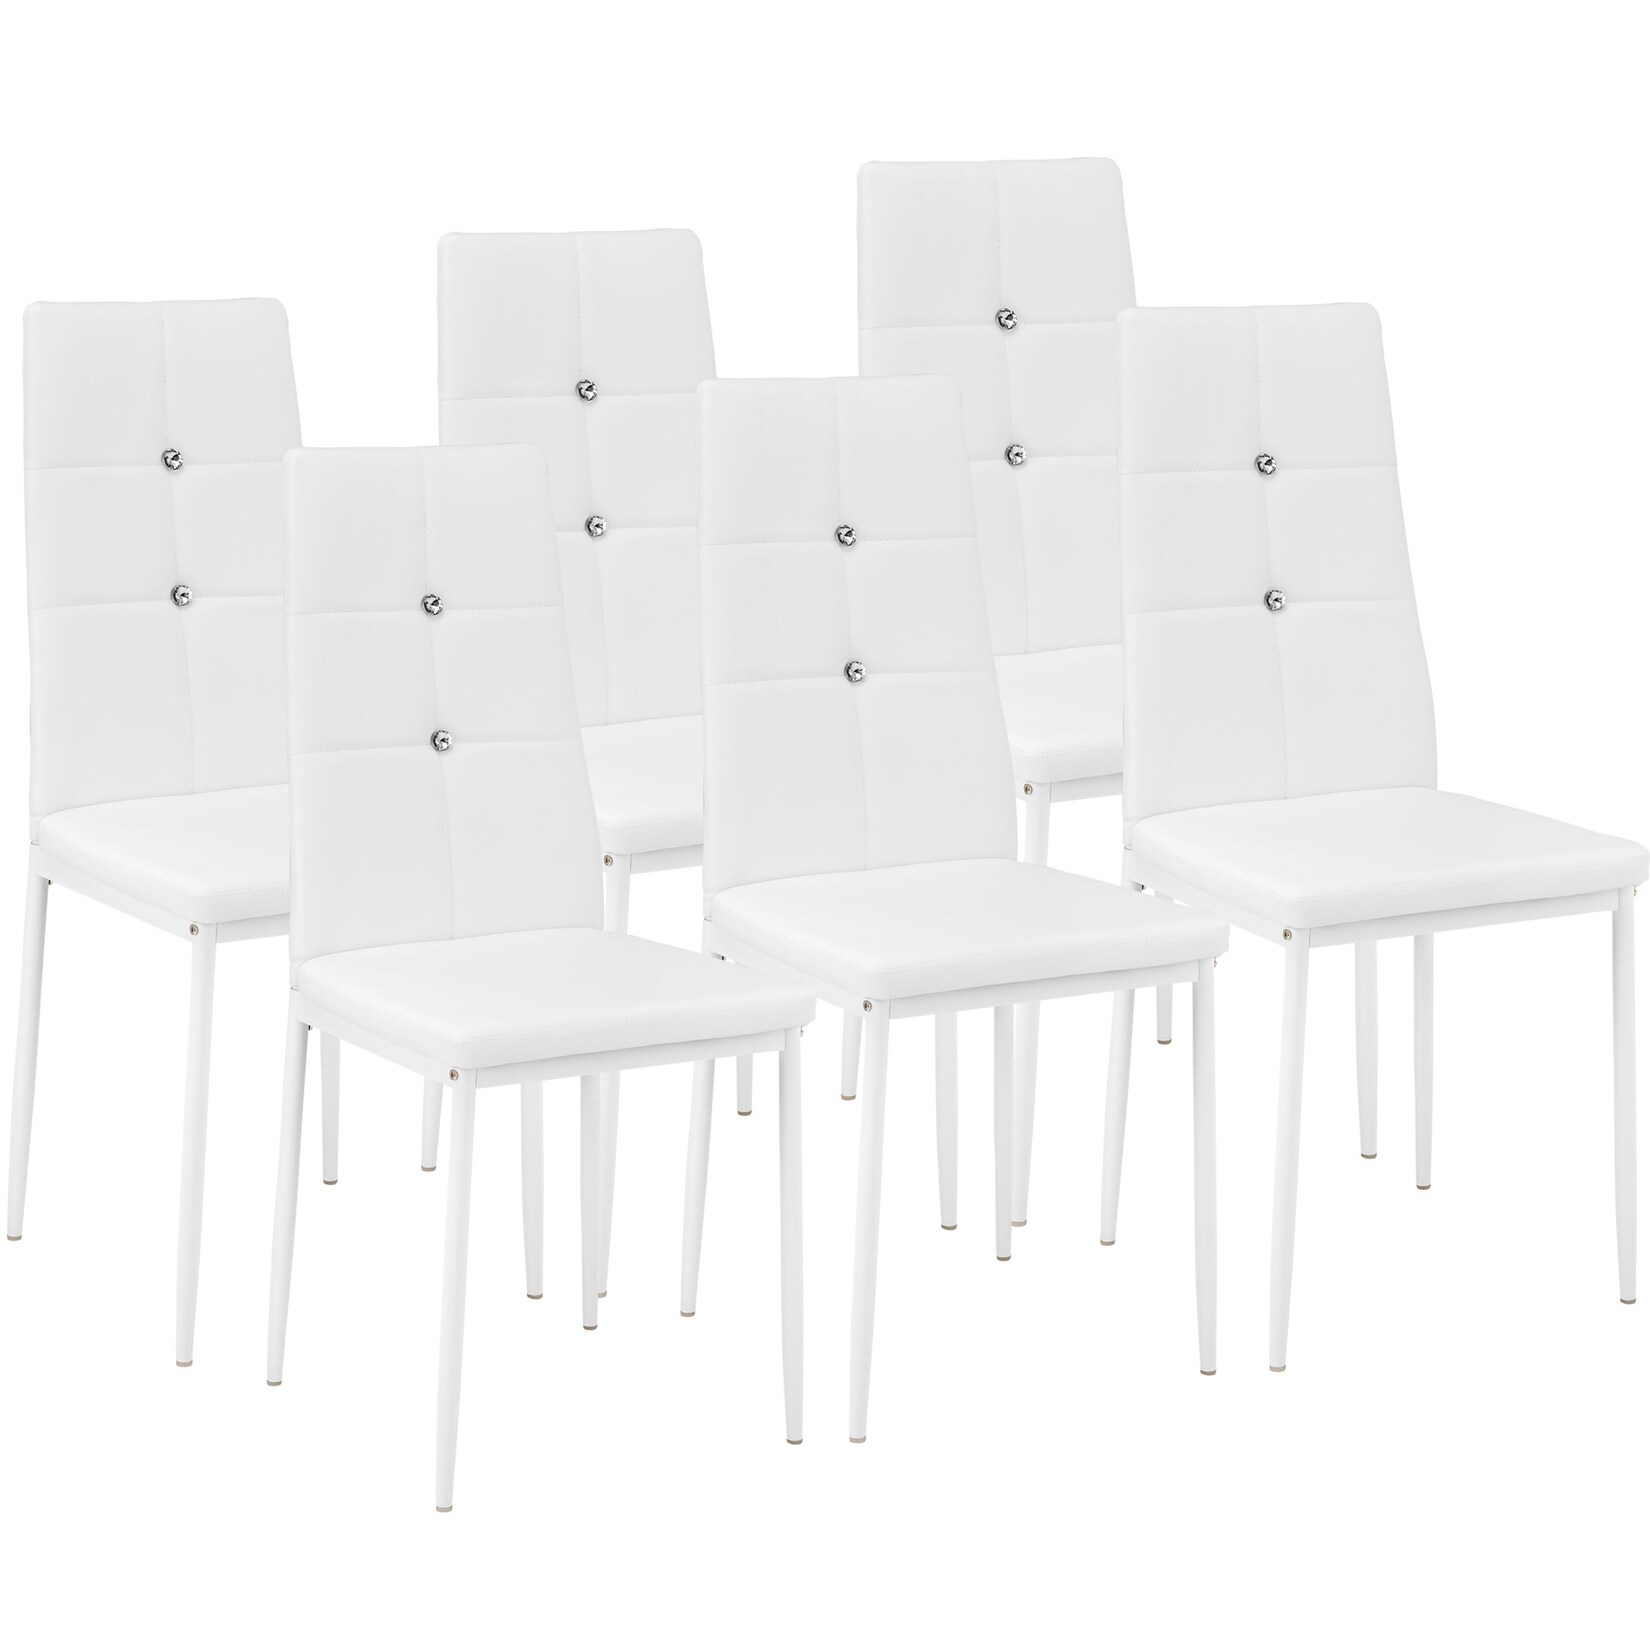 tectake® 6er Set Esszimmerstuhl, gepolstert mit Kunstlederbezug, schlanke Stahlbeine, 40 x 42 x 97 cm